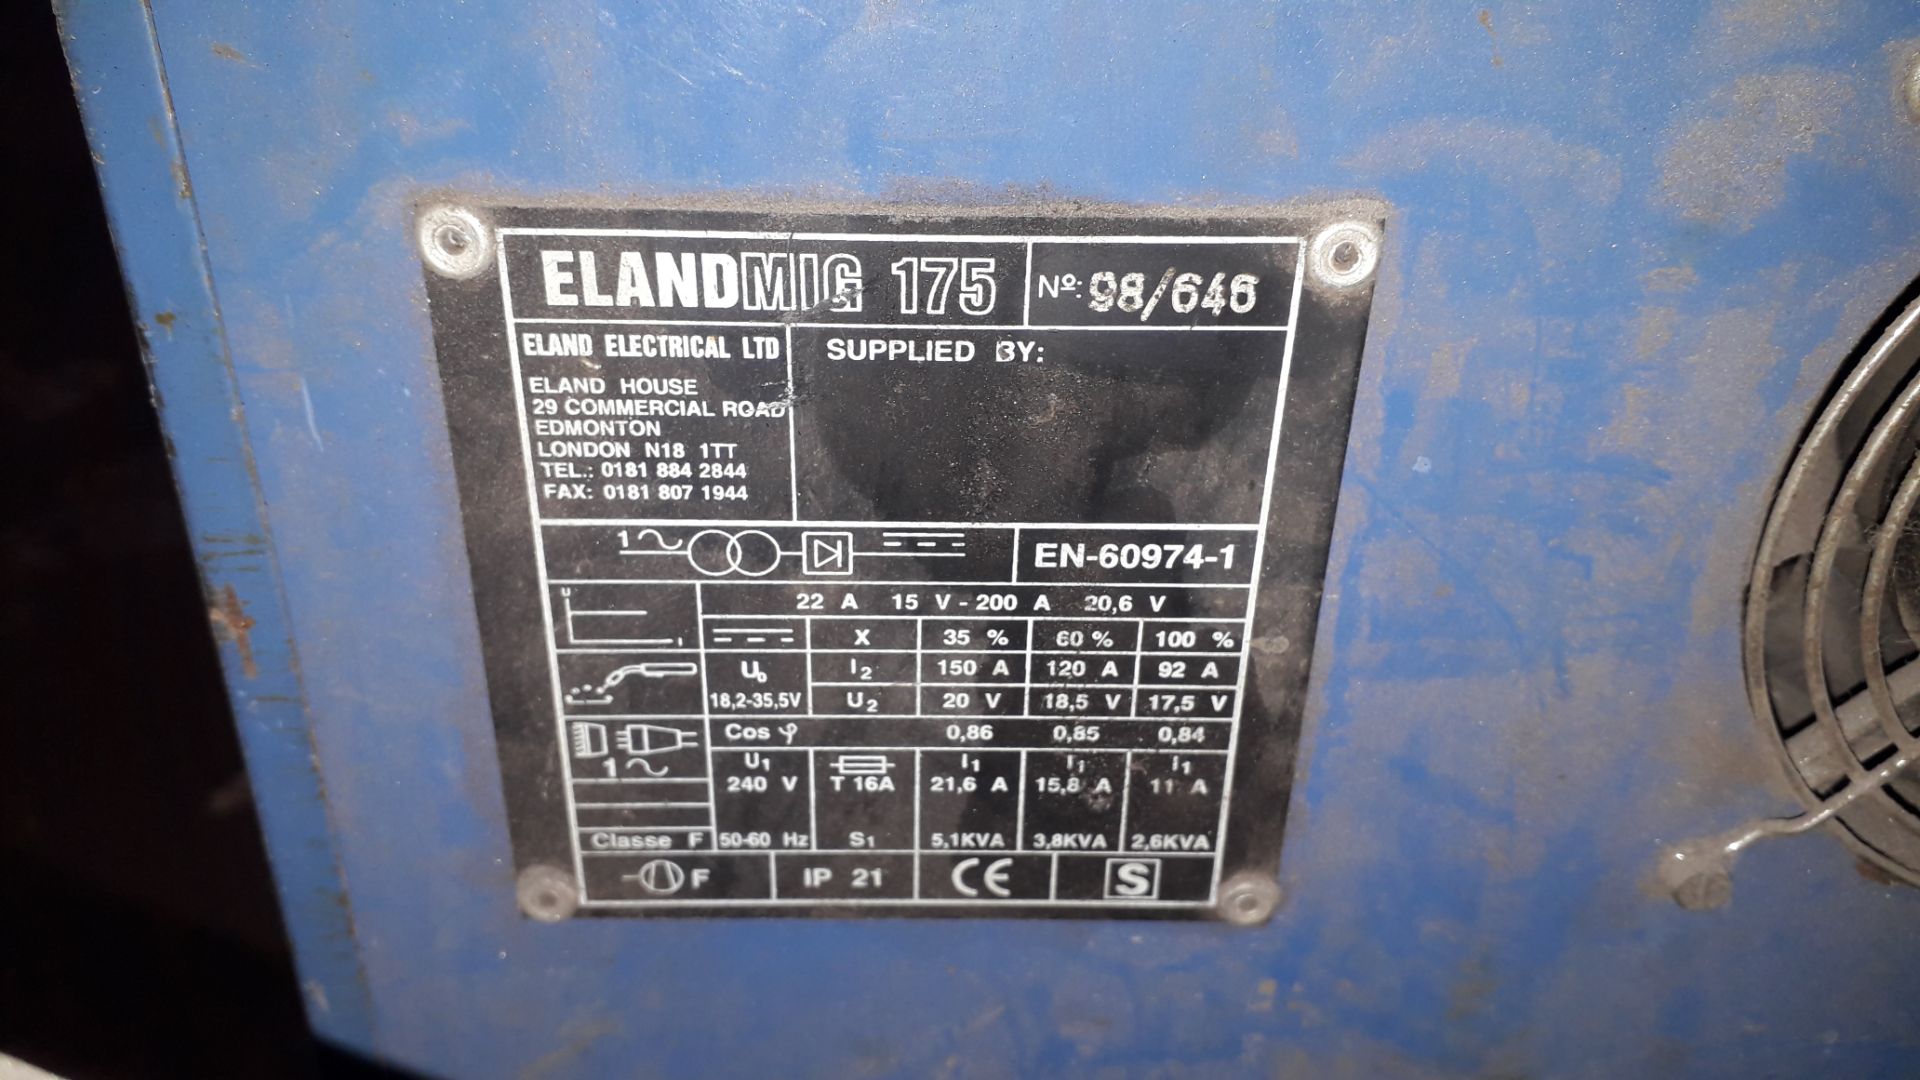 Eland Mig 175 Mig Welding Set Serial Number 98/646 - Image 3 of 3